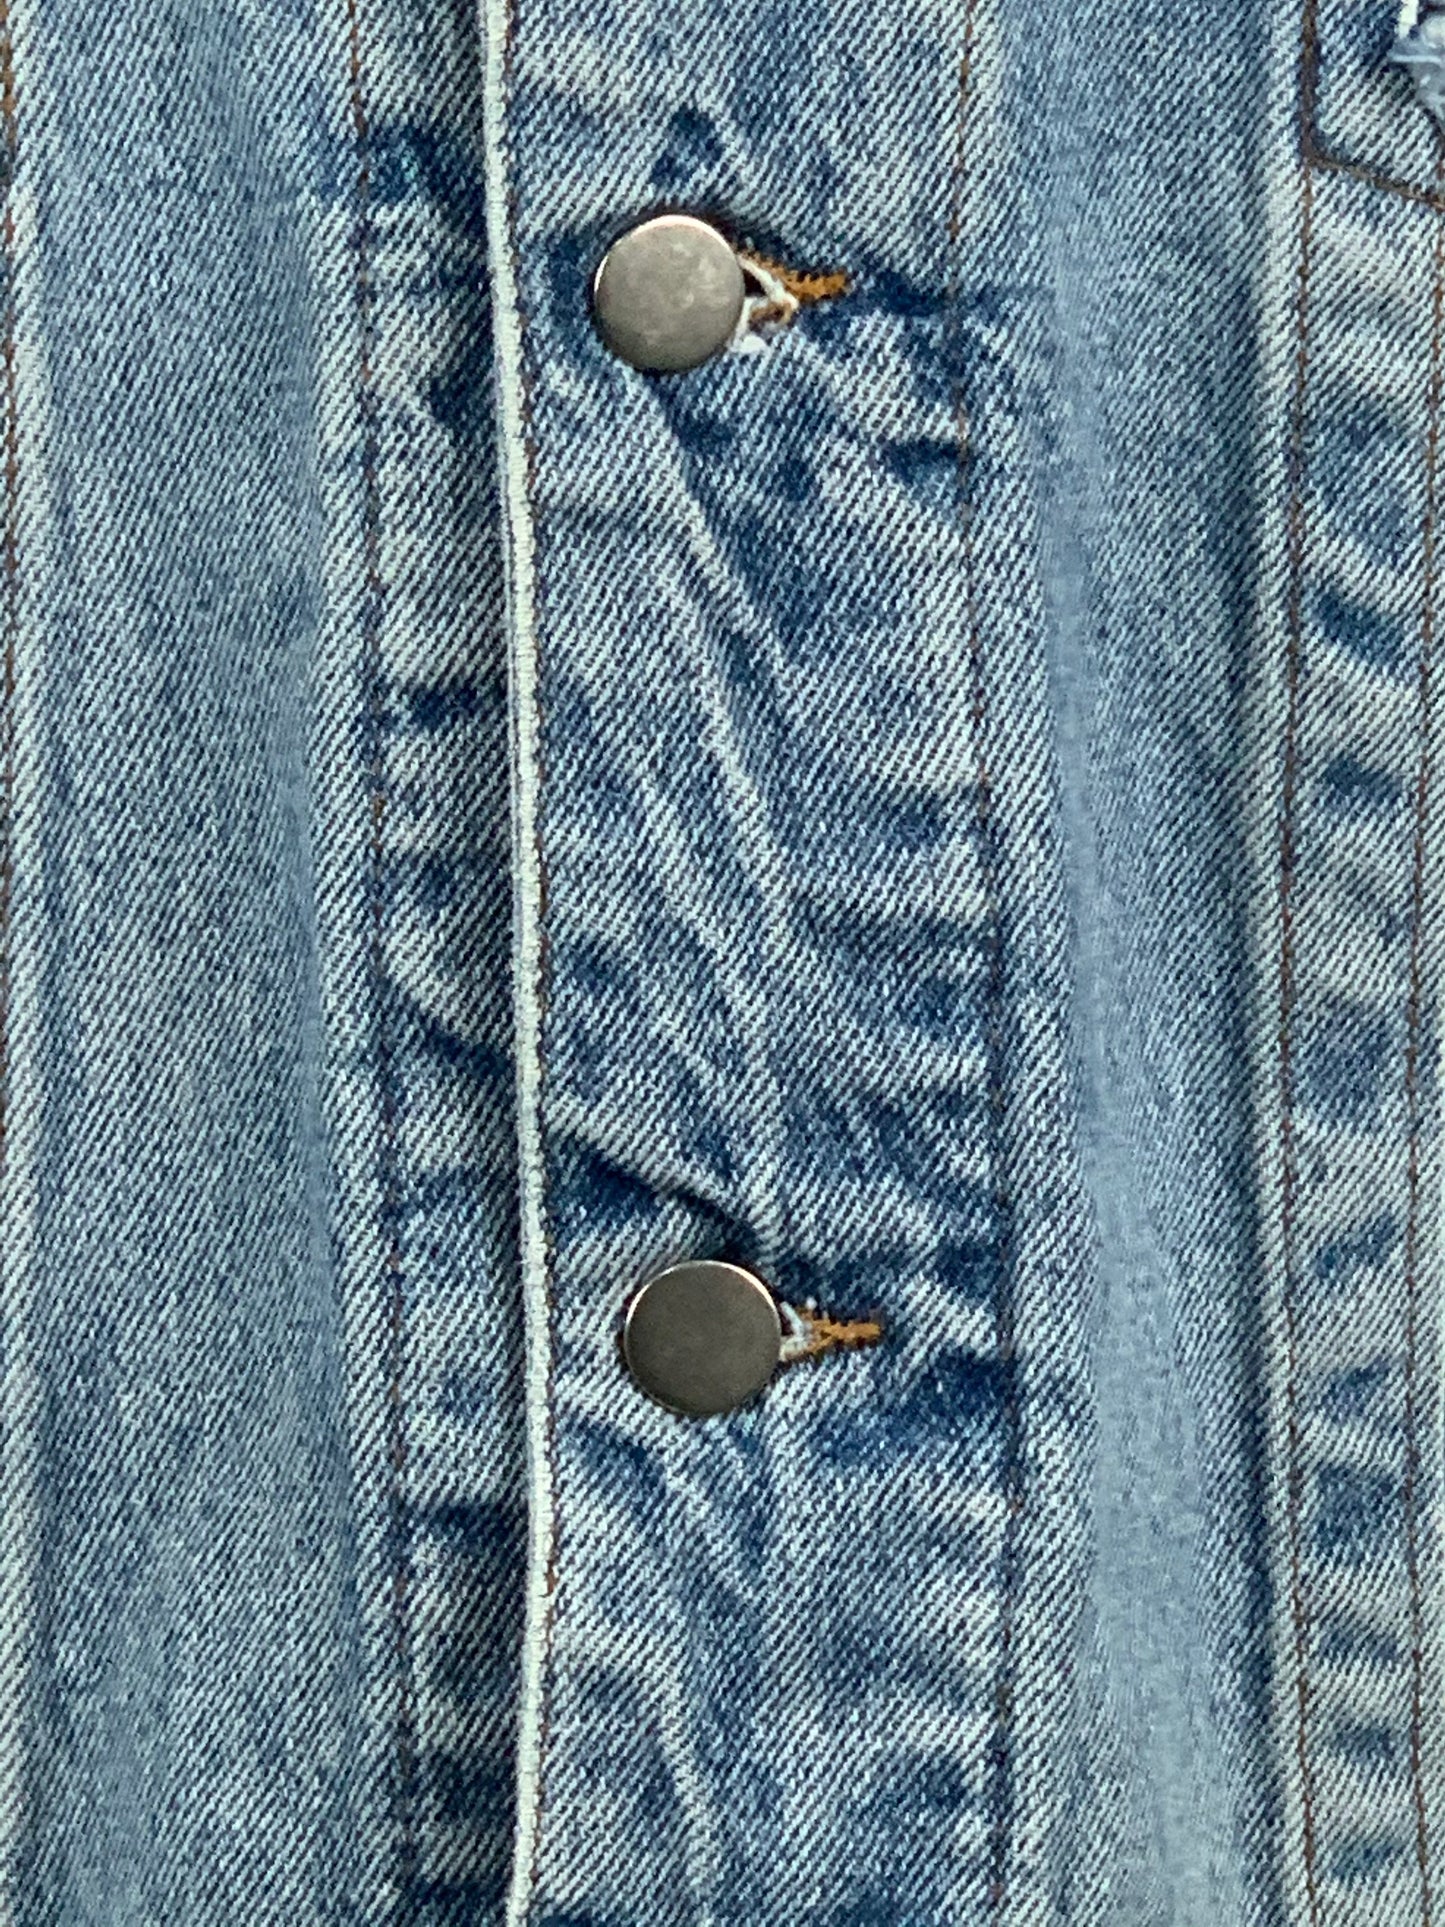 Jeansjacke mit Nieten - Größe groß